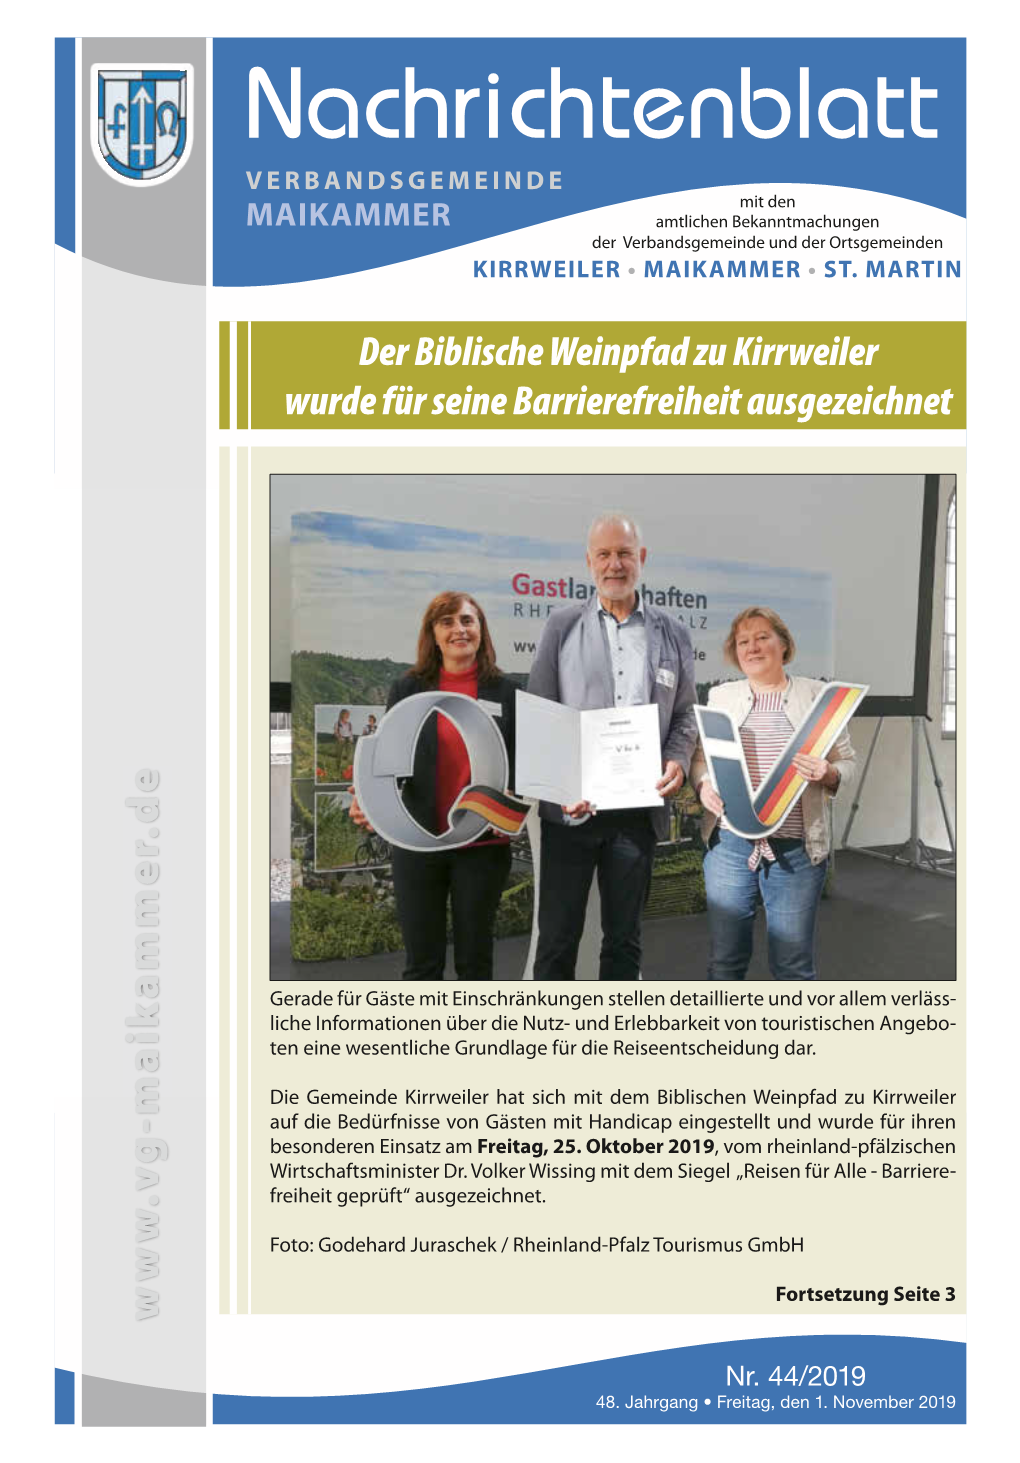 Nachrichtenblatt Verbandsgemeinde Mit Den Maikammer Amtlichen Bekanntmachungen Der Verbandsgemeinde Und Der Ortsgemeinden Kirrweiler • Maikammer • St